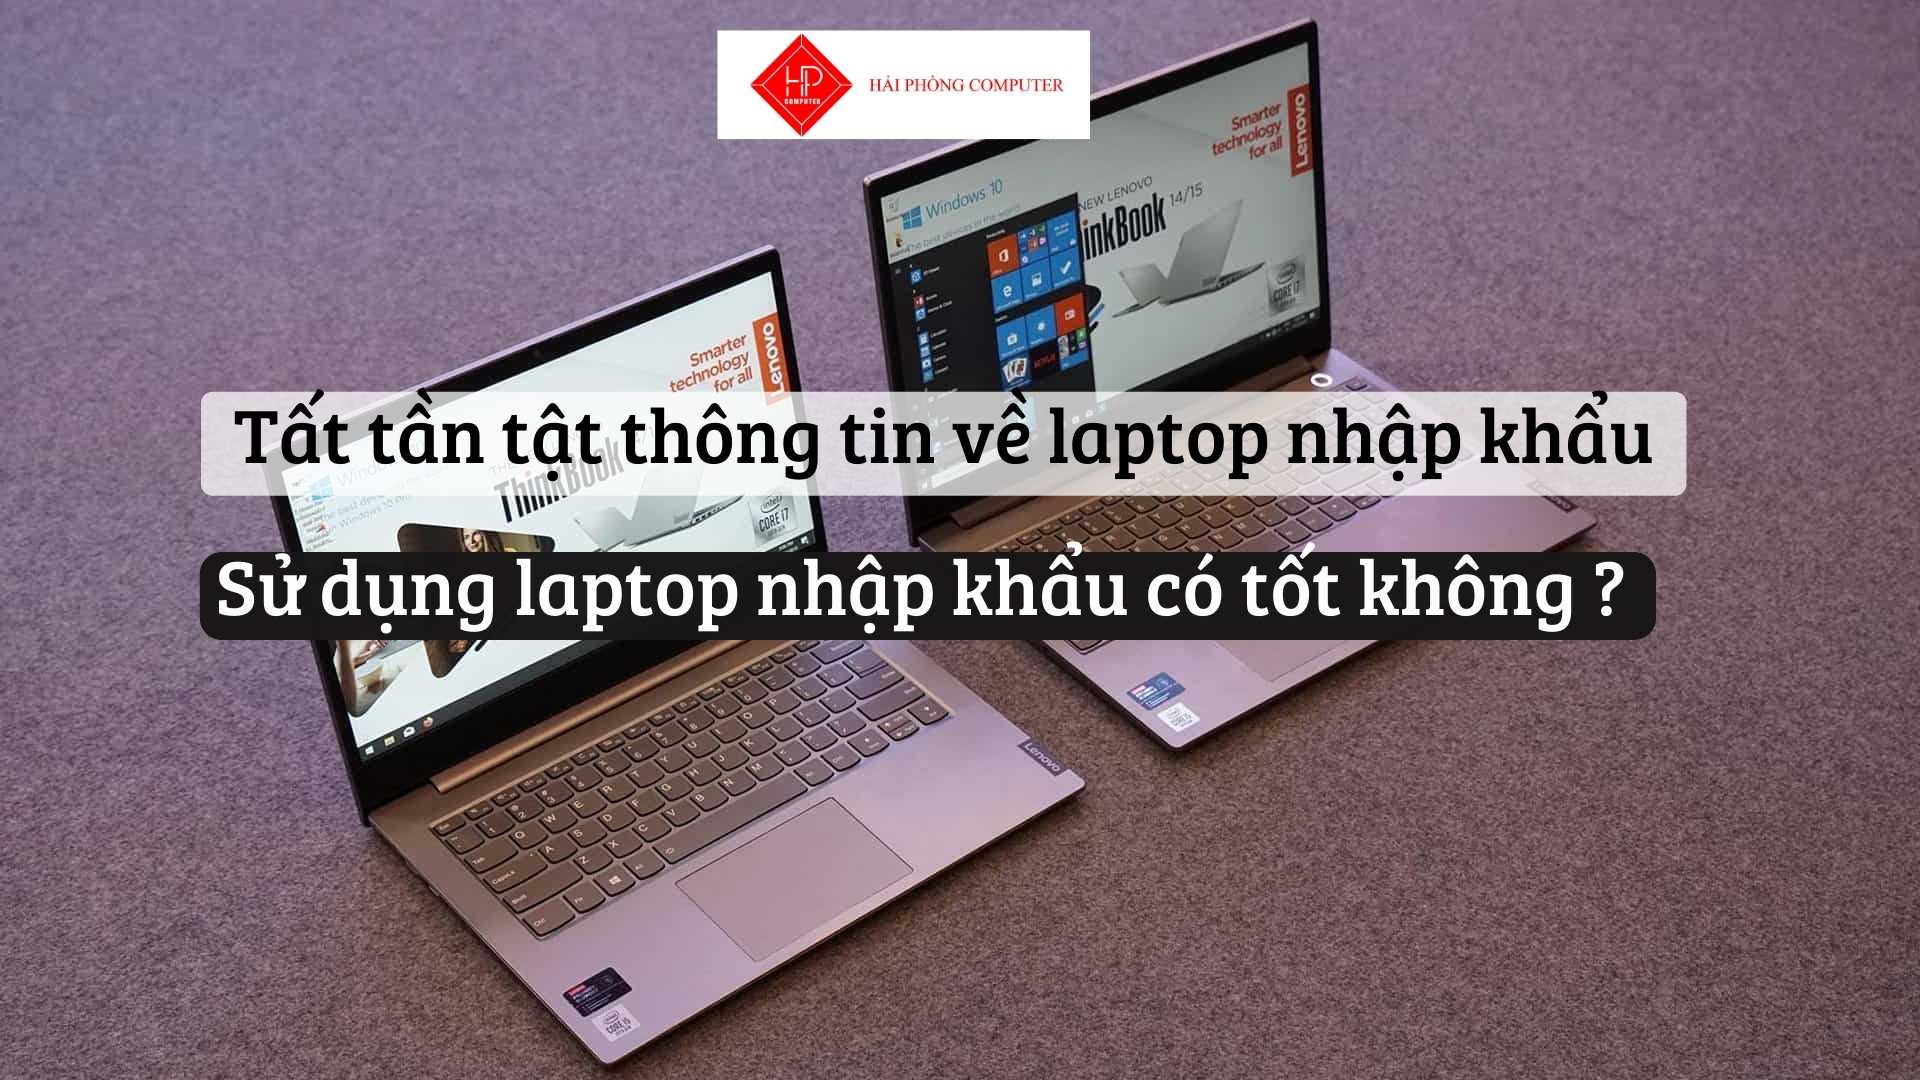 Tất tần tật thông tin về laptop nhập khẩu. Sử dụng laptop nhập khẩu có tốt không ?